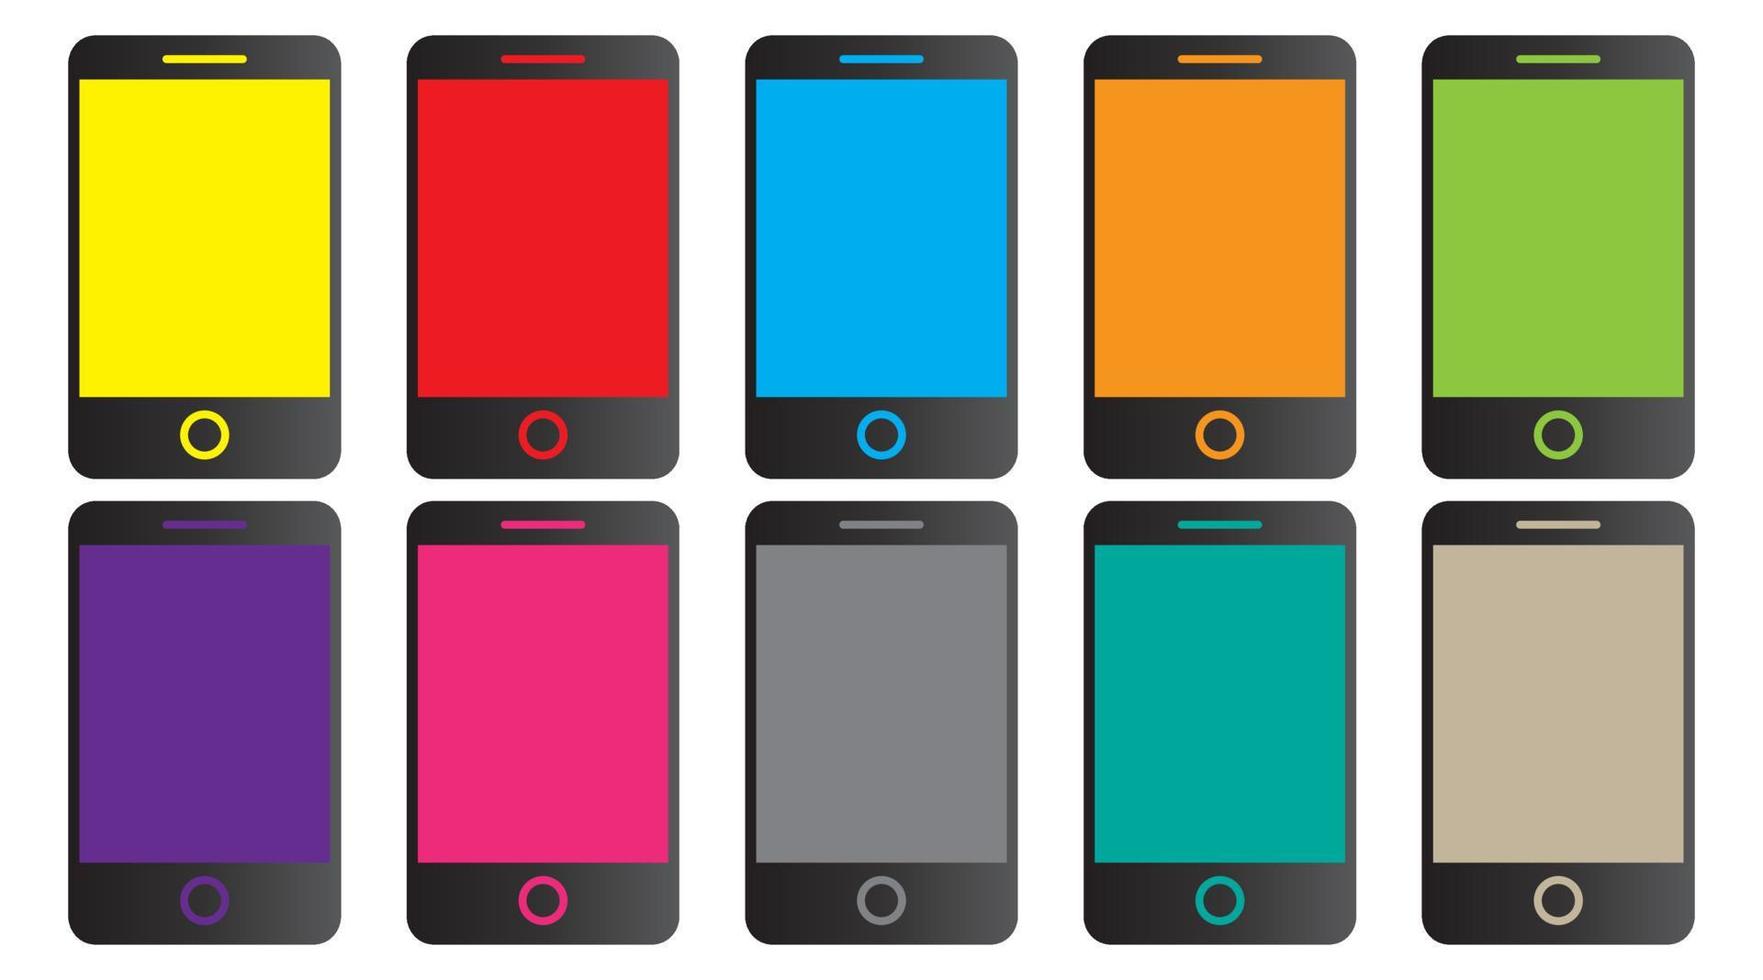 kleurrijke smartphone vector pictogram. Android-collectie voor smartphones. mobiel smartphonescherm of moderne mobiele telefoon